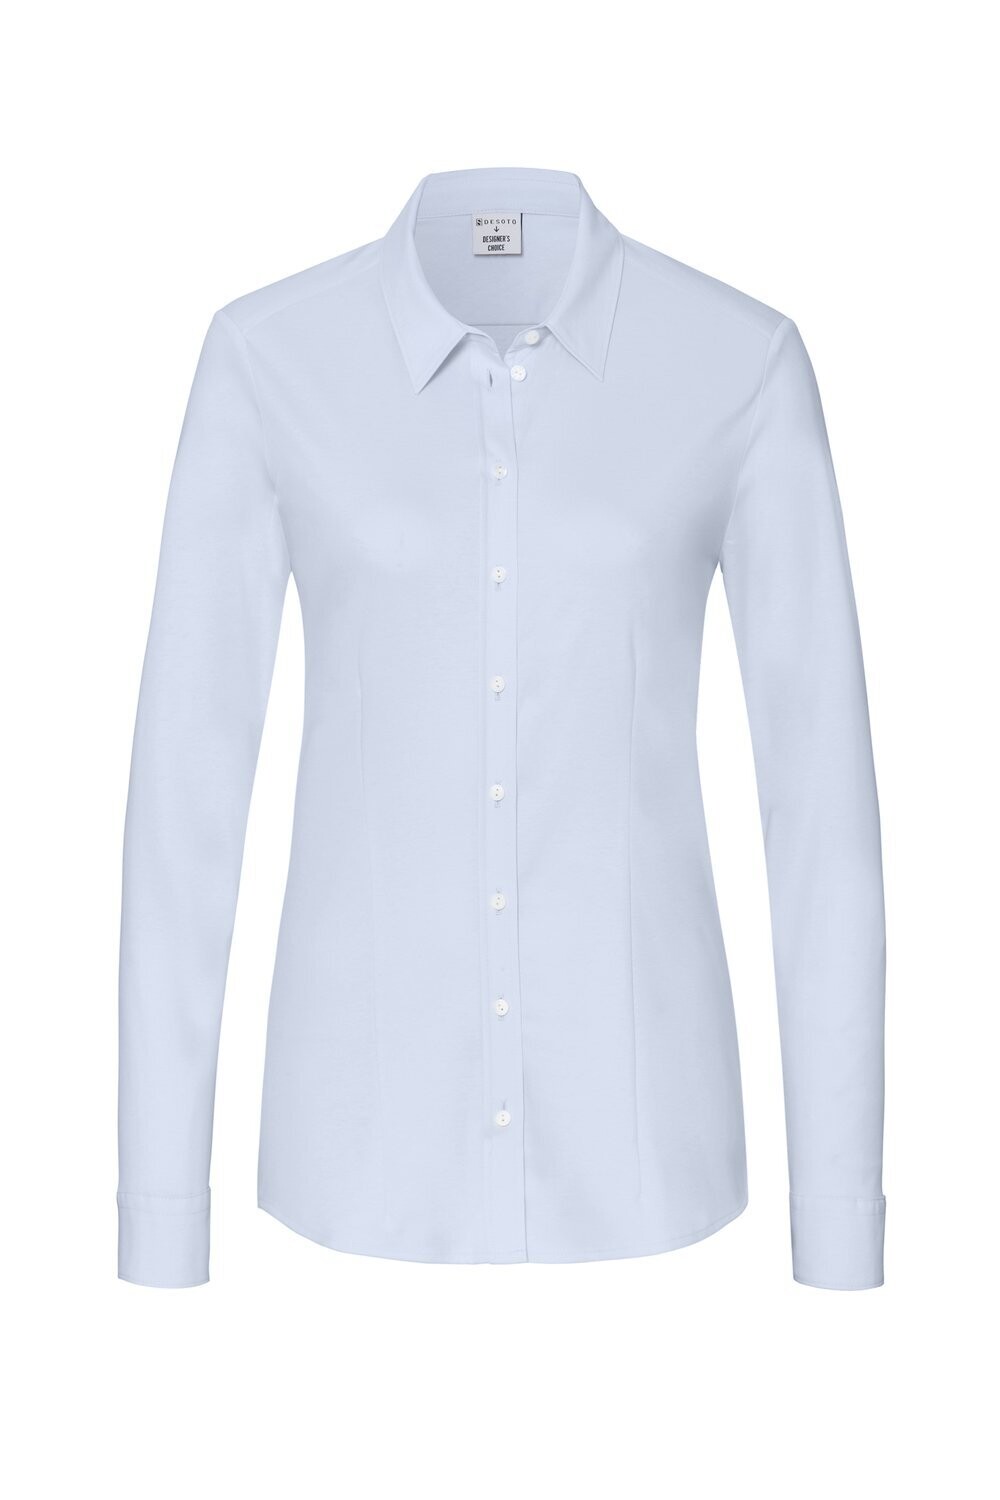 Desoto blouse Pia, lichtblauw